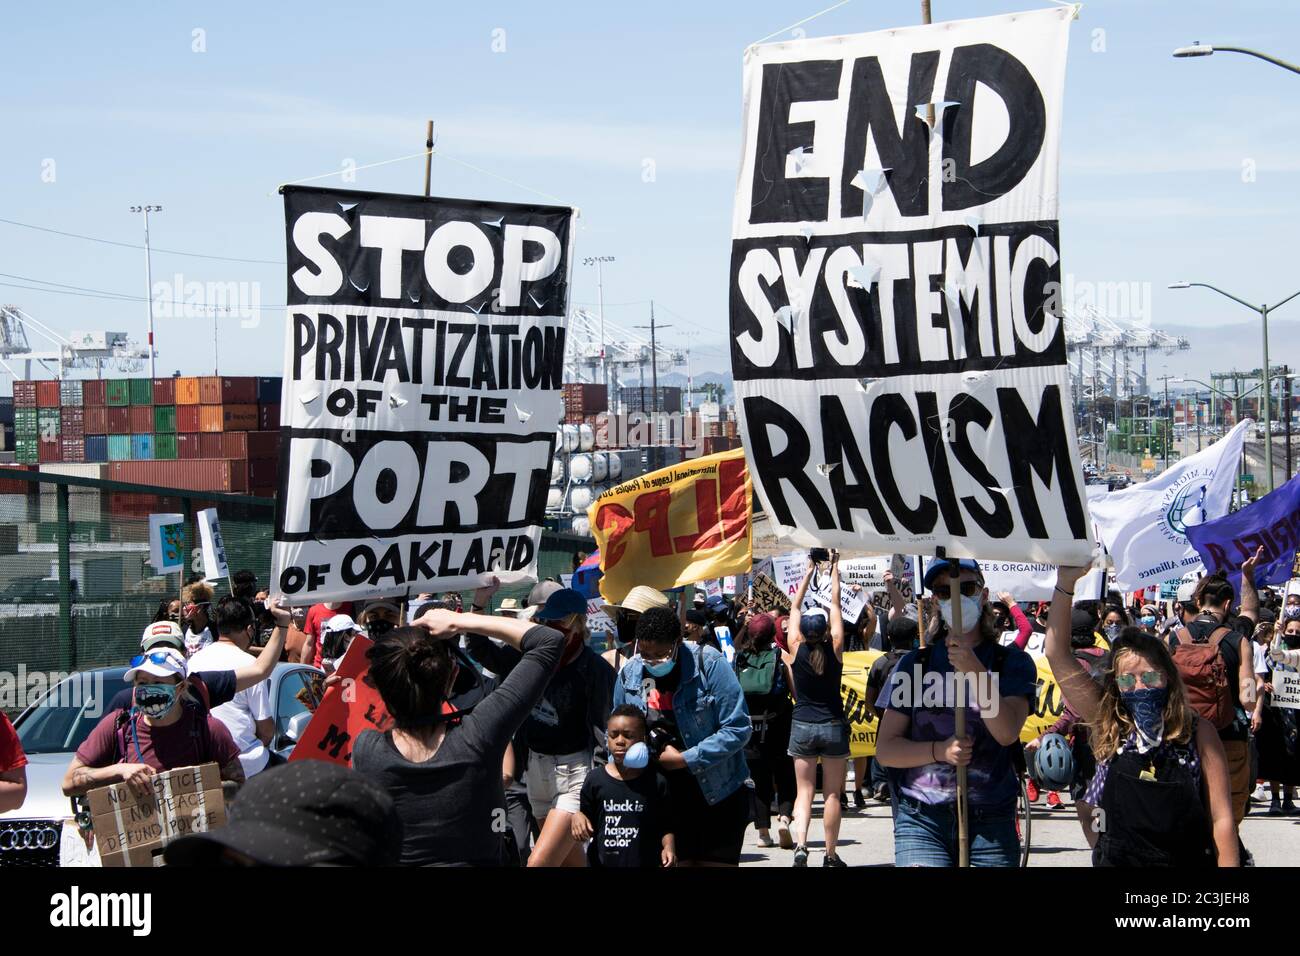 Des manifestants manifestent contre le racisme et la privatisation lors d'une manifestation Black Lives Matter au port d'Oakland le 19 juin 2020. Banque D'Images